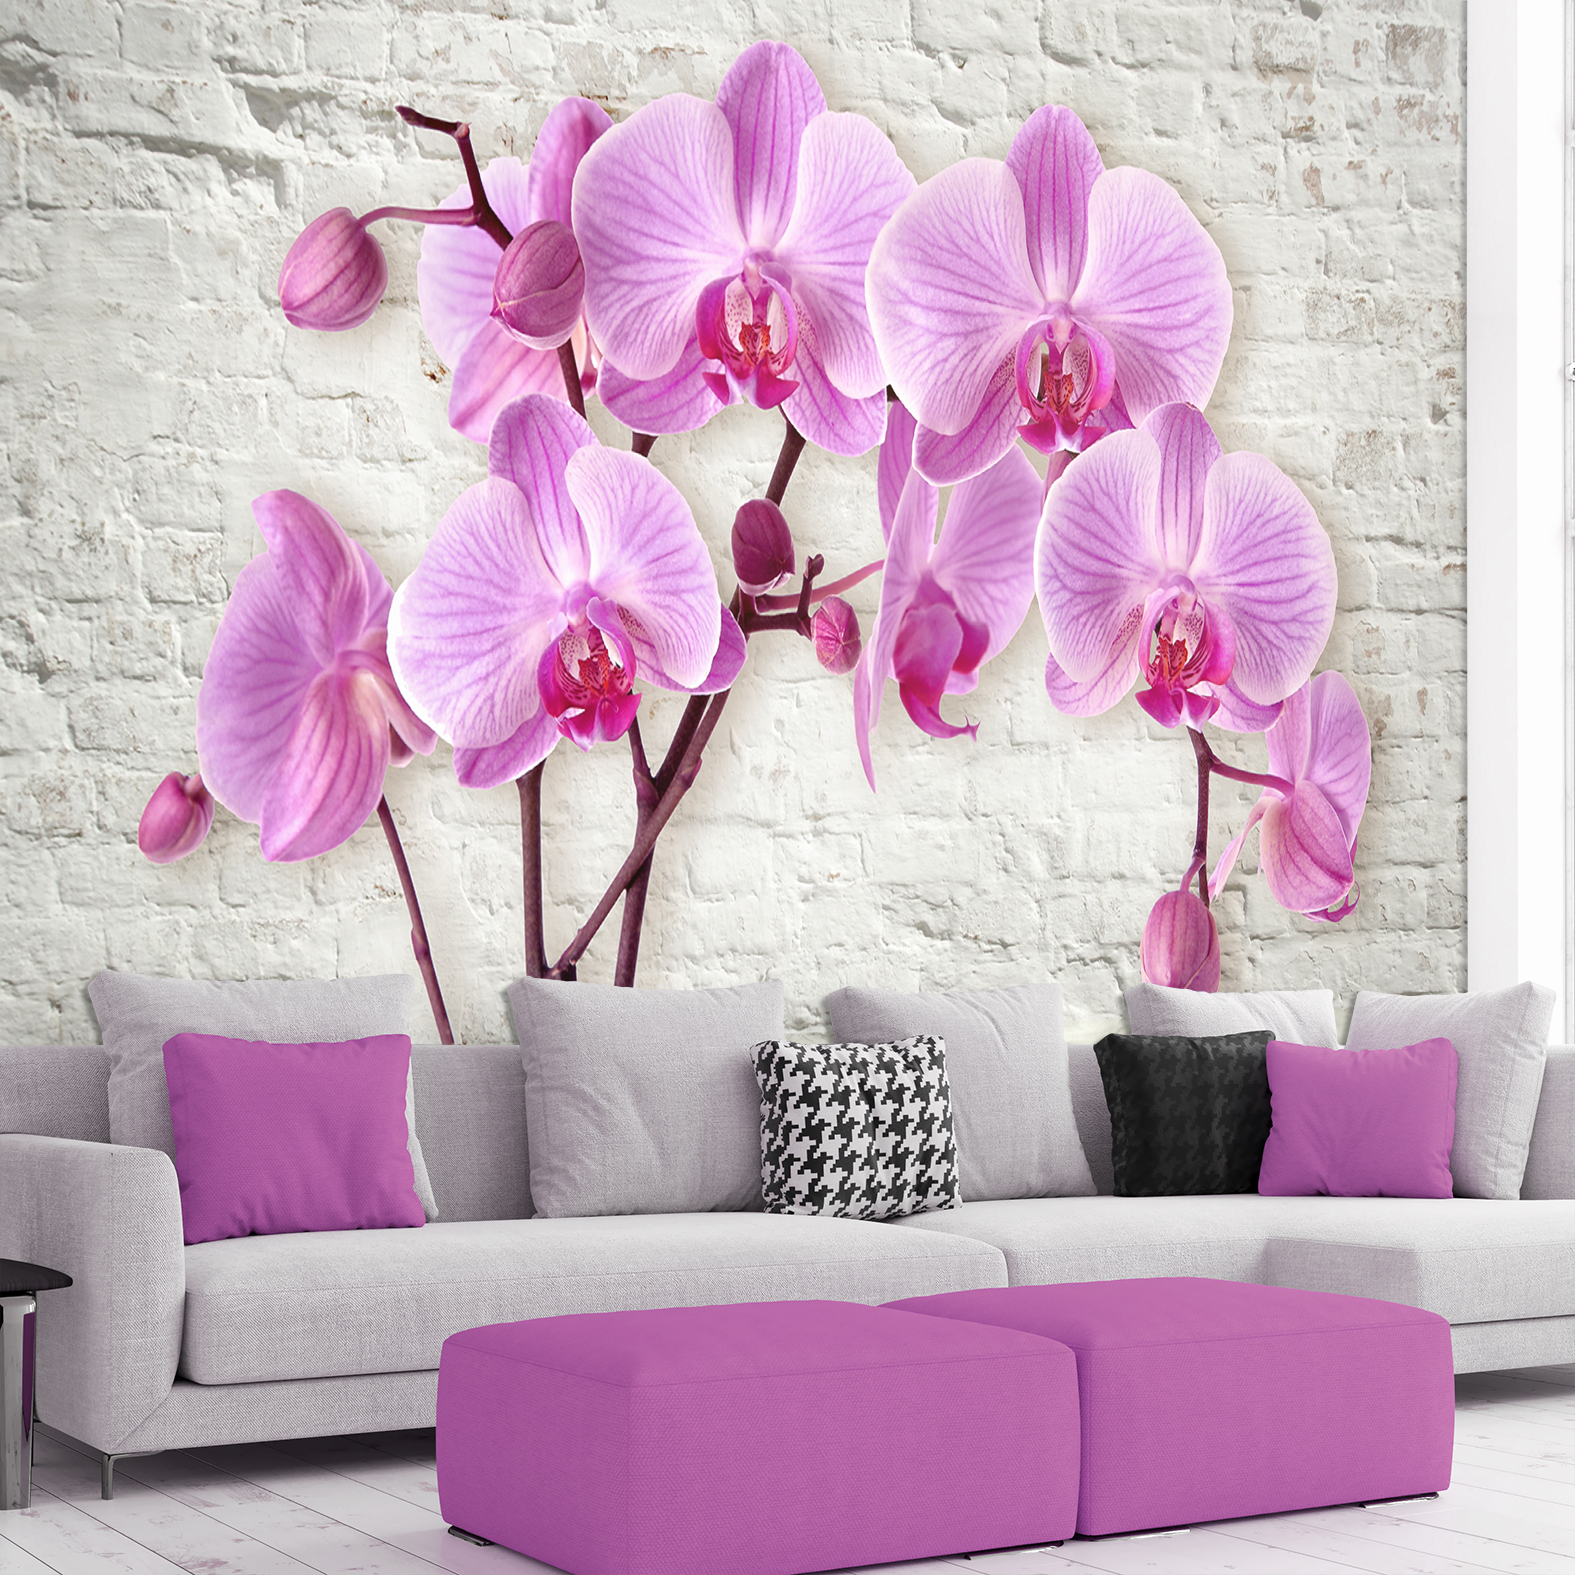 Фотообои Photostena 3D орхидеи на фоне кирпичной стены 4,08 x 2,8 м